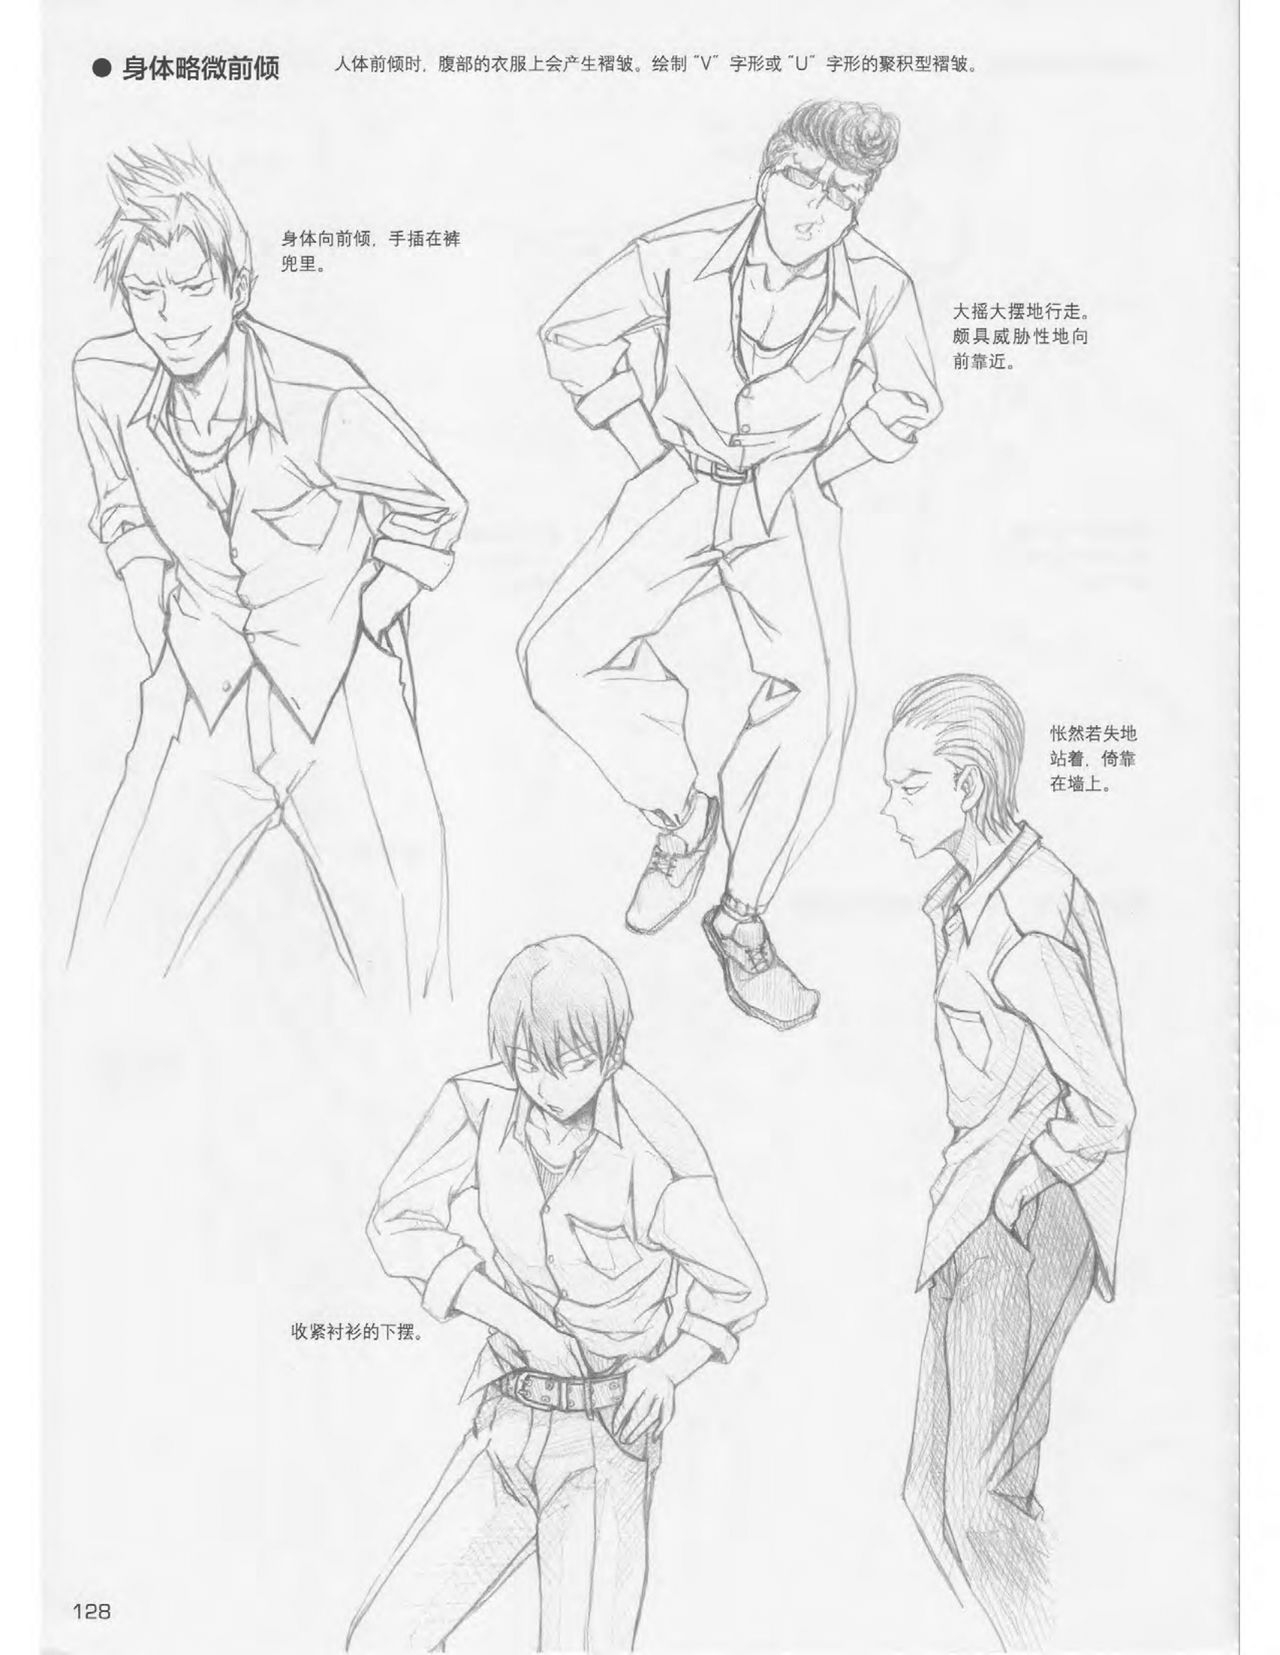 Japanese Manga Master Lecture 3: Lin Akira and Kakumaru Maru Talk About Glamorous Character Modeling 127